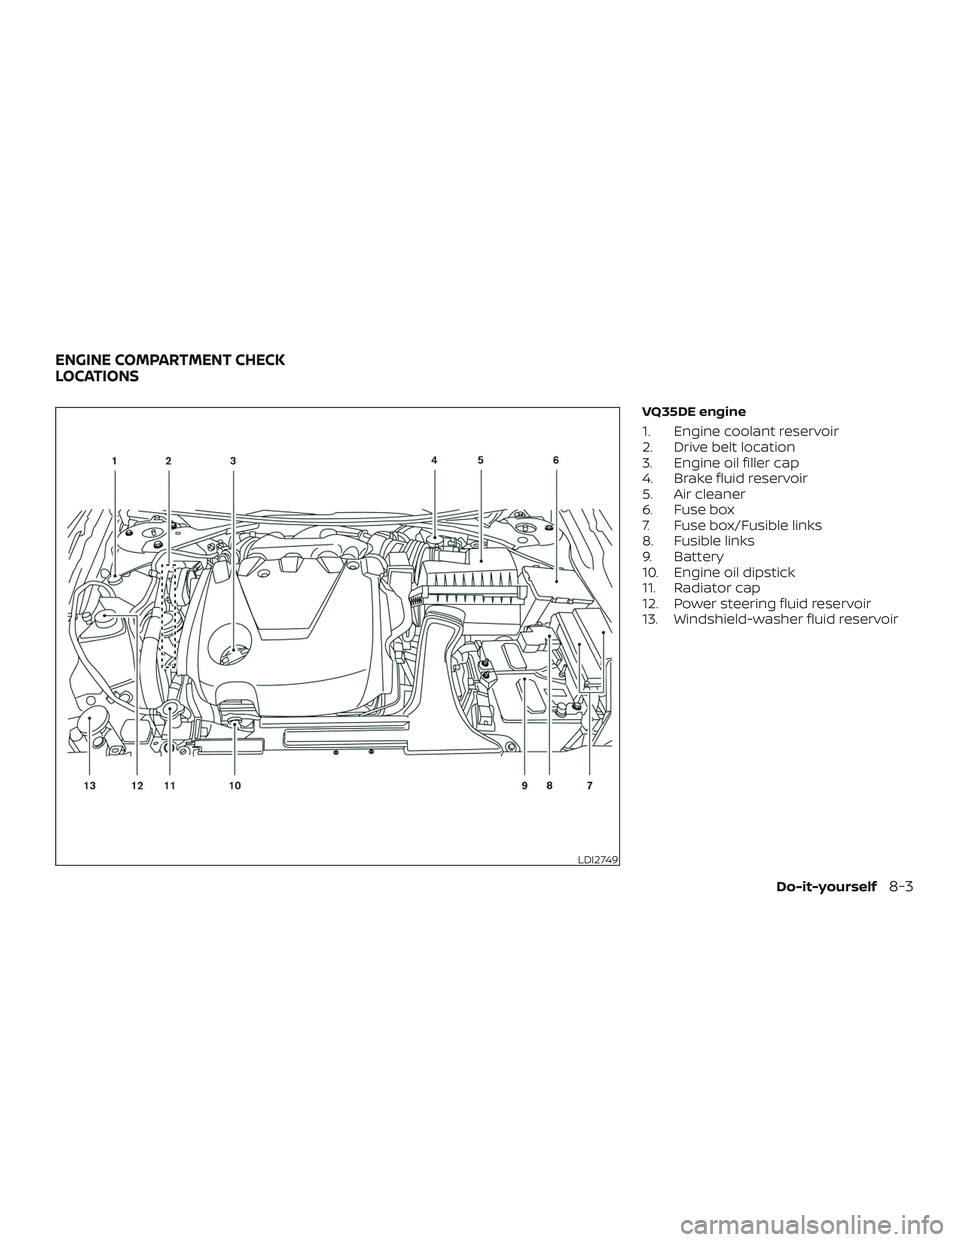 NISSAN MAXIMA 2019  Owner´s Manual VQ35DE engine
1. Engine coolant reservoir
2. Drive belt location
3. Engine oil filler cap
4. Brake fluid reservoir
5. Air cleaner
6. Fuse box
7. Fuse box/Fusible links
8. Fusible links
9. Battery
10. 